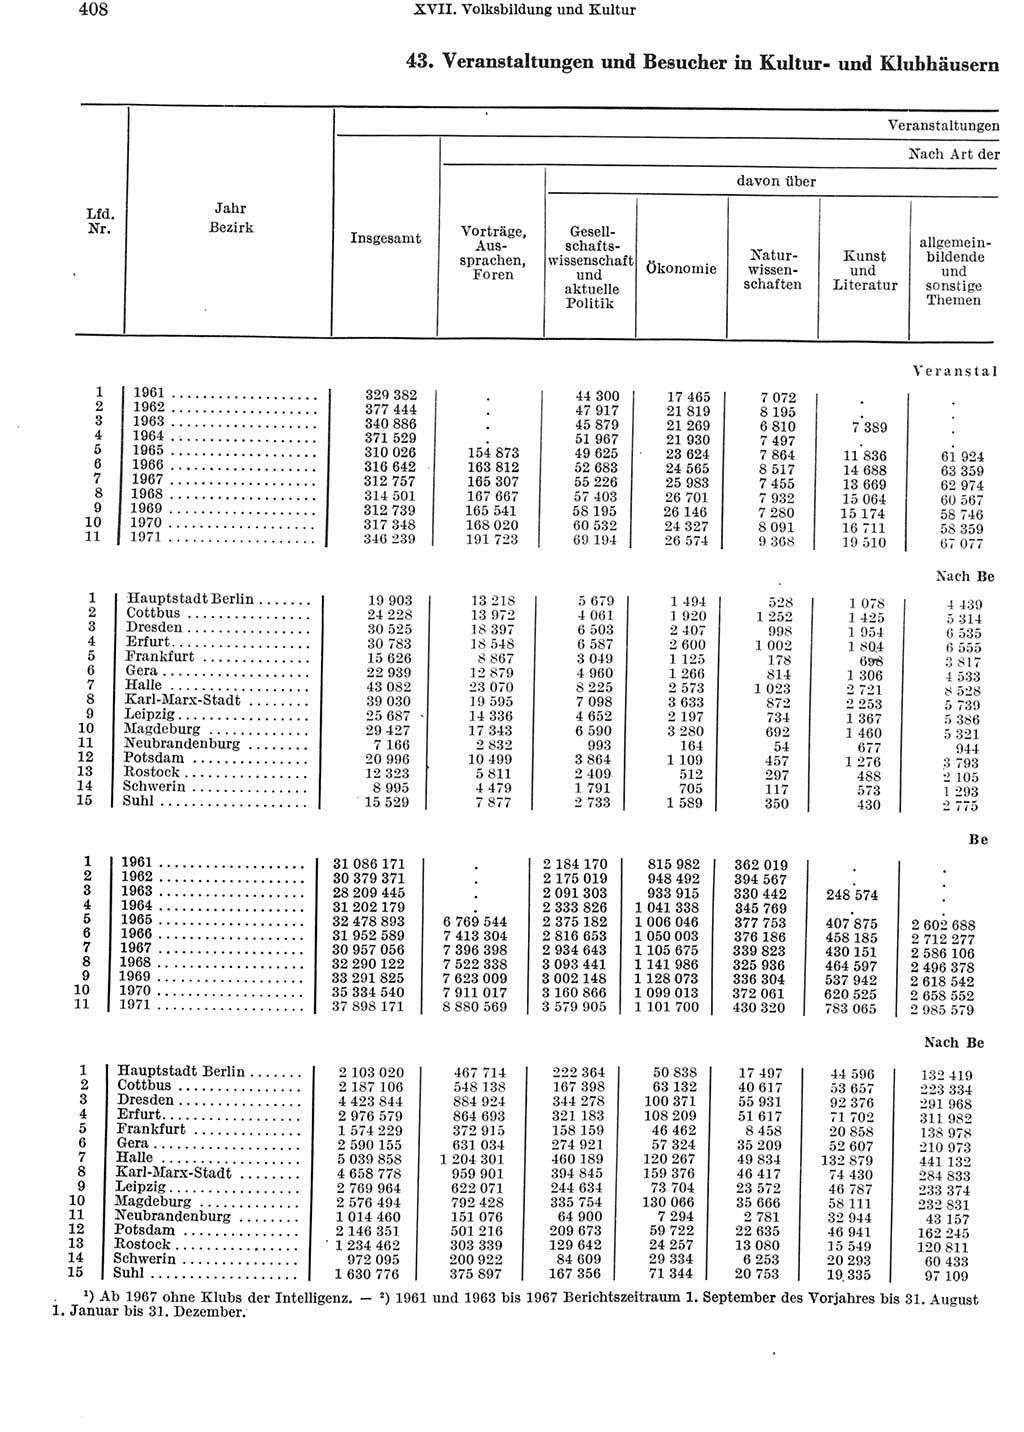 Statistisches Jahrbuch der Deutschen Demokratischen Republik (DDR) 1972, Seite 408 (Stat. Jb. DDR 1972, S. 408)